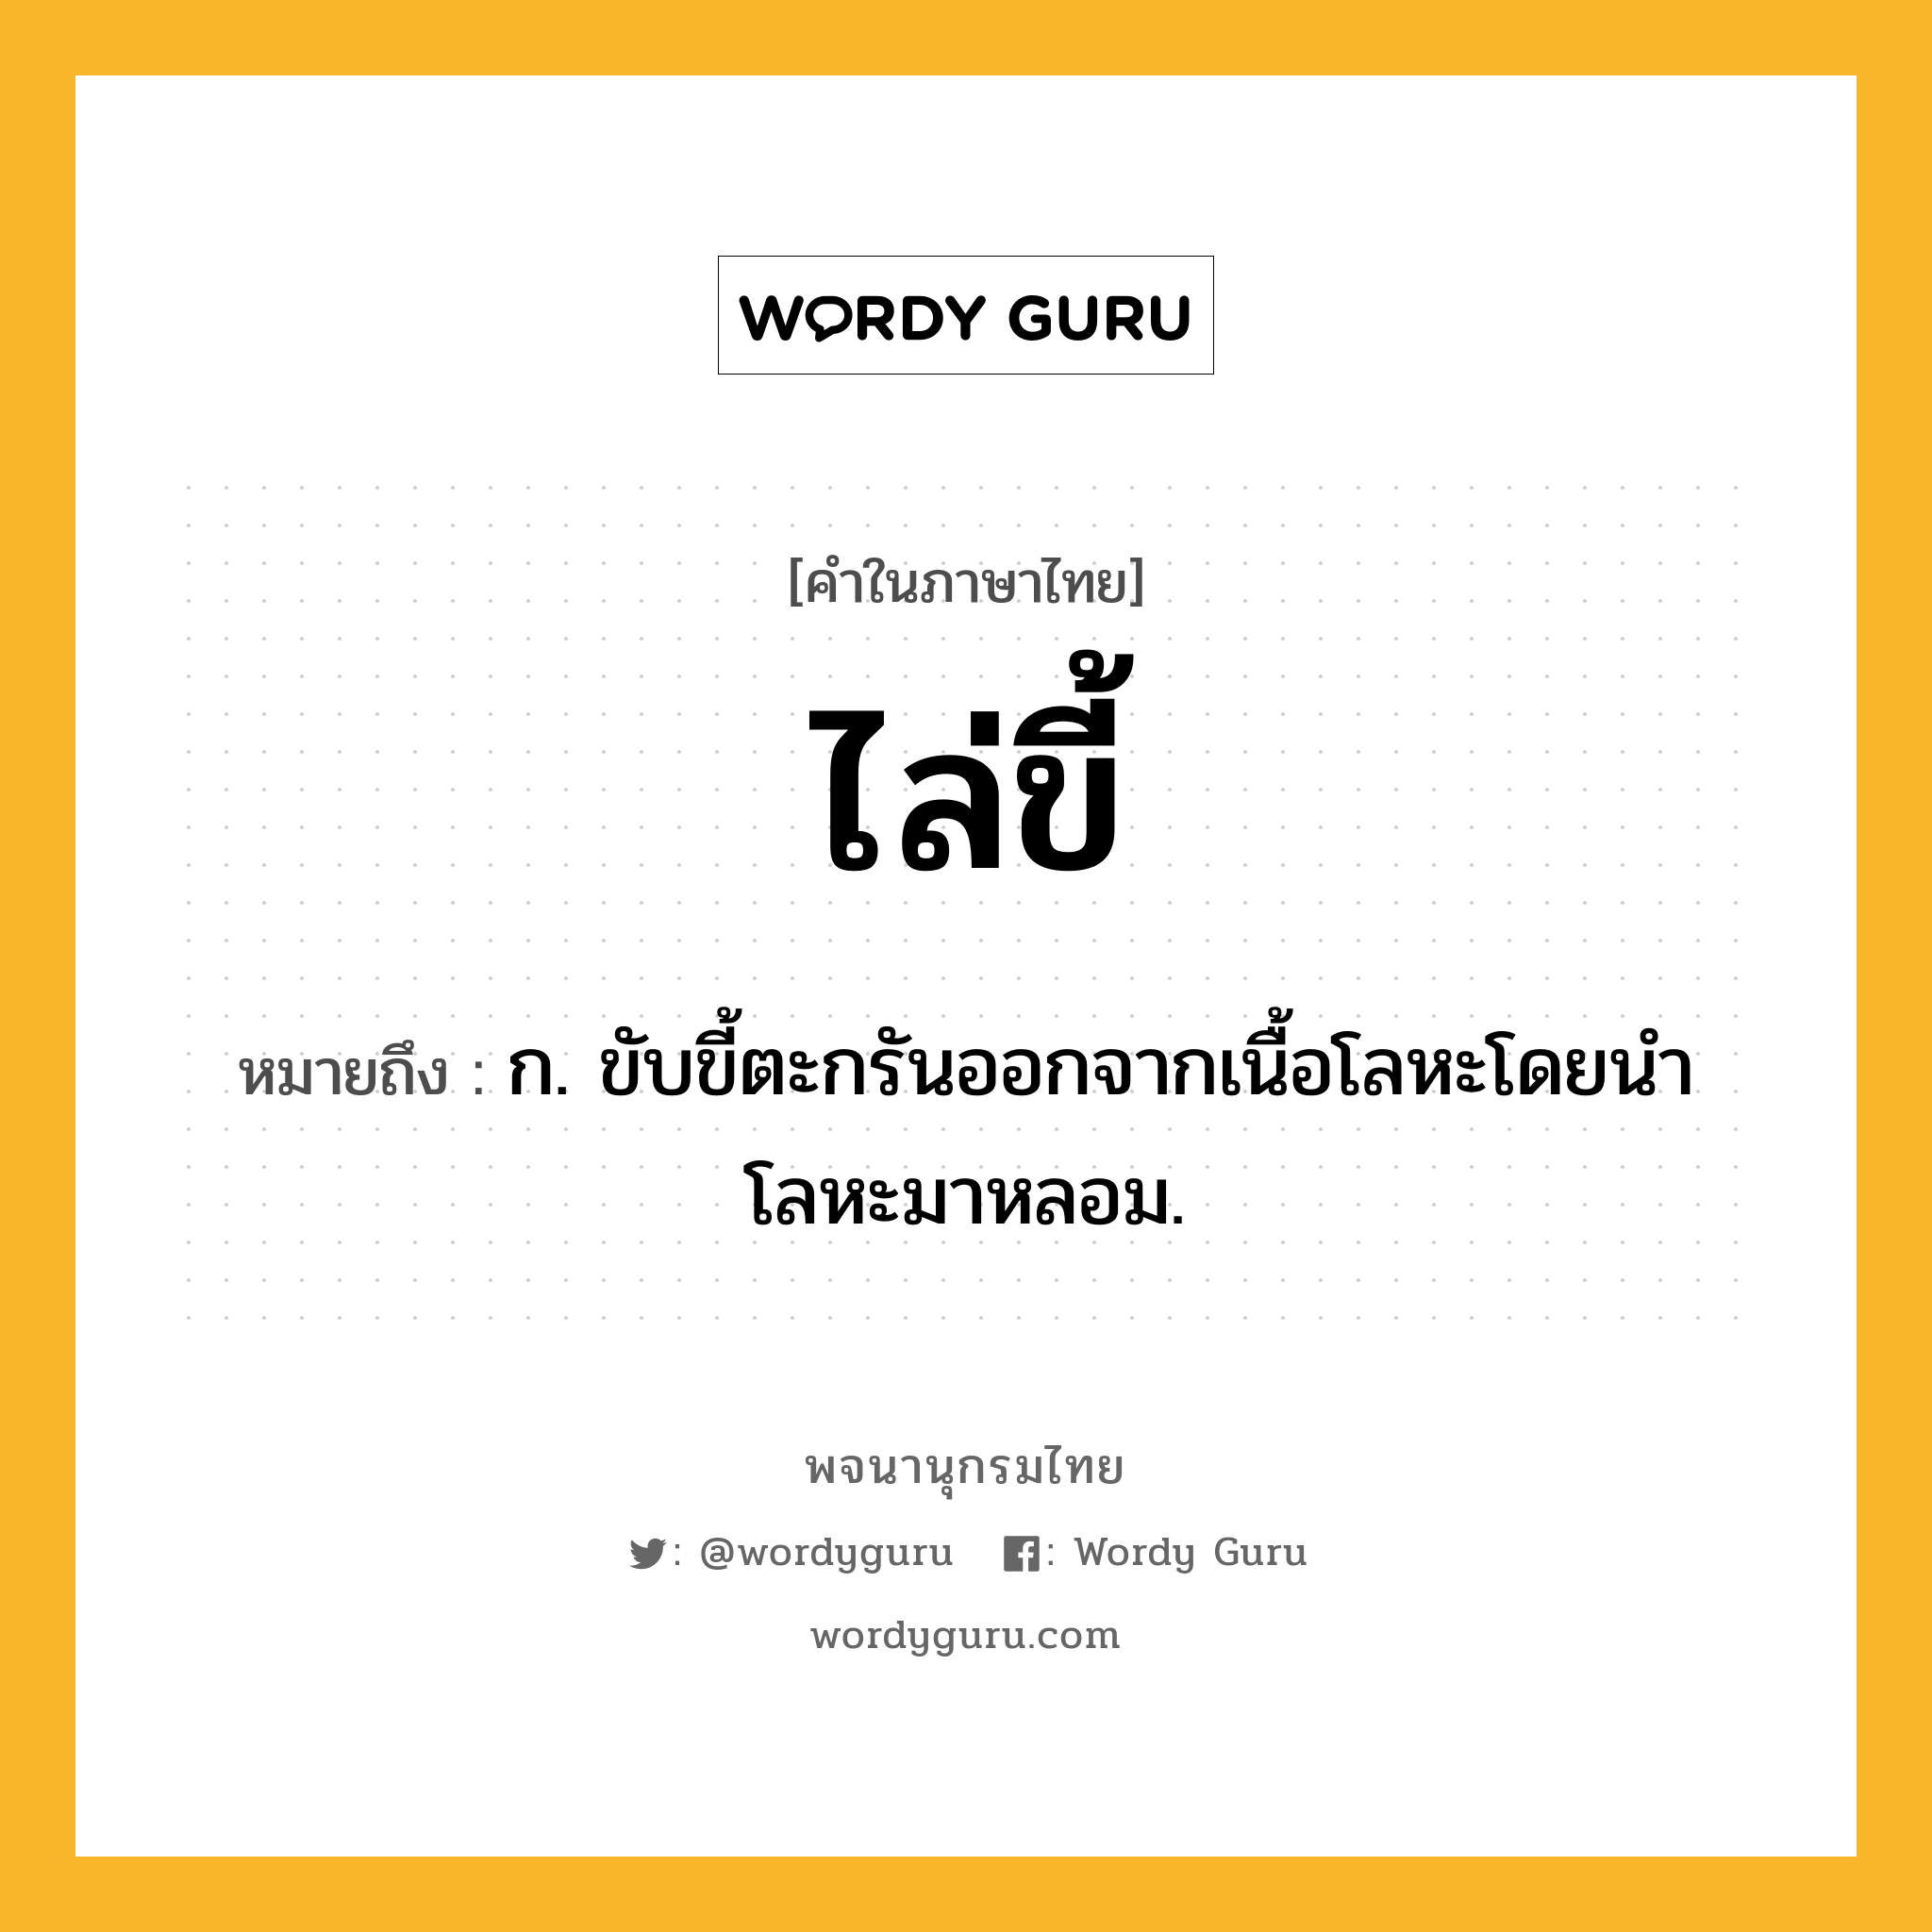 ไล่ขี้ ความหมาย หมายถึงอะไร?, คำในภาษาไทย ไล่ขี้ หมายถึง ก. ขับขี้ตะกรันออกจากเนื้อโลหะโดยนำโลหะมาหลอม.